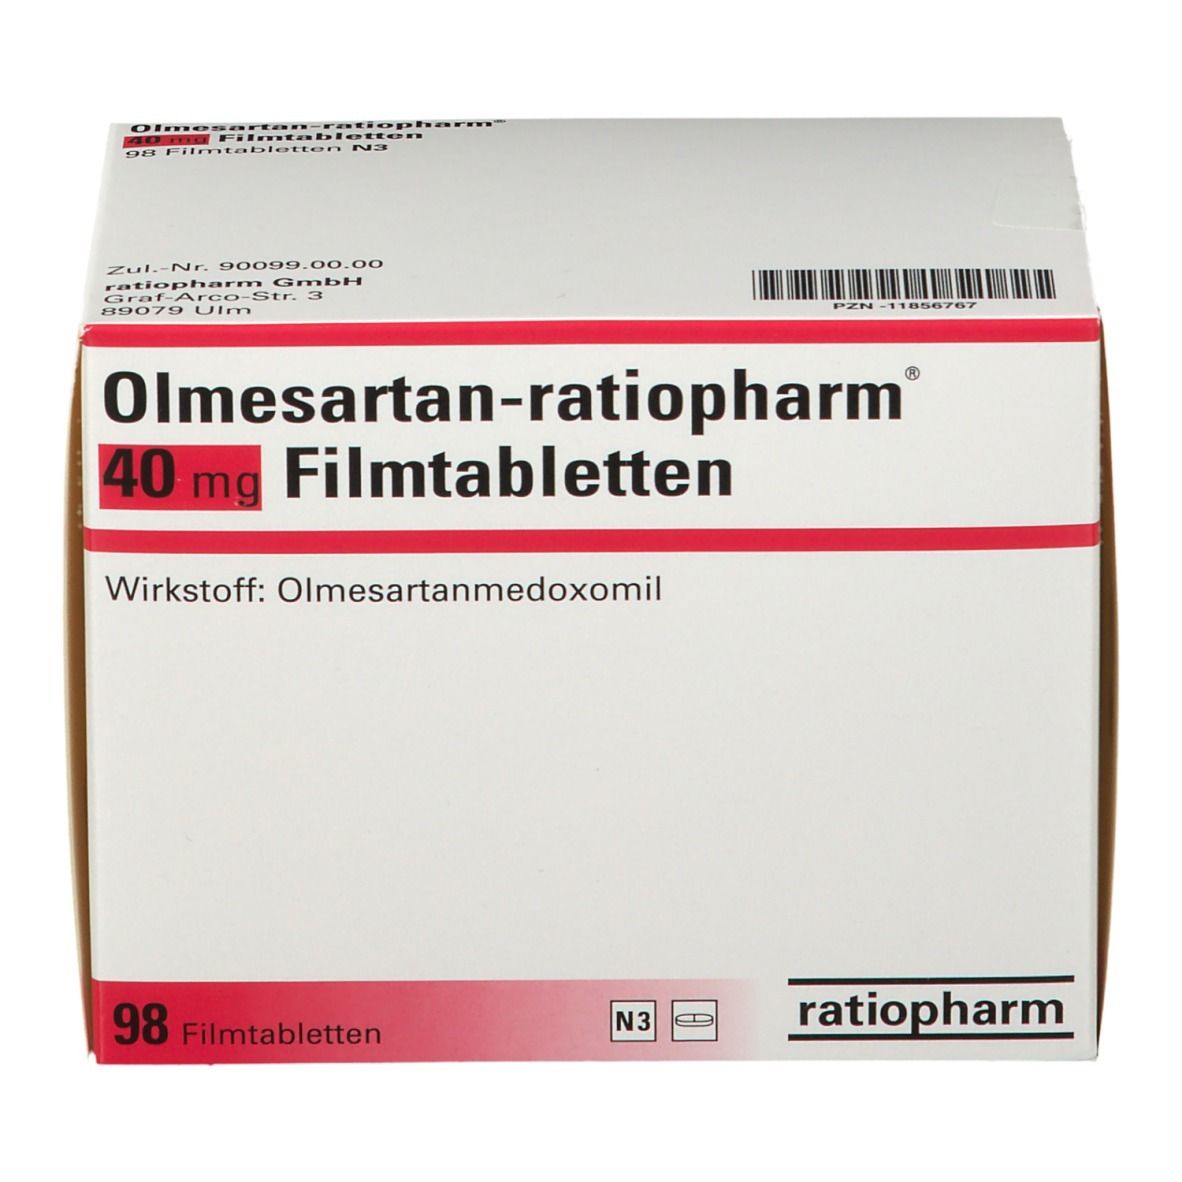 Olmesartan-ratiopharm® 40 mg